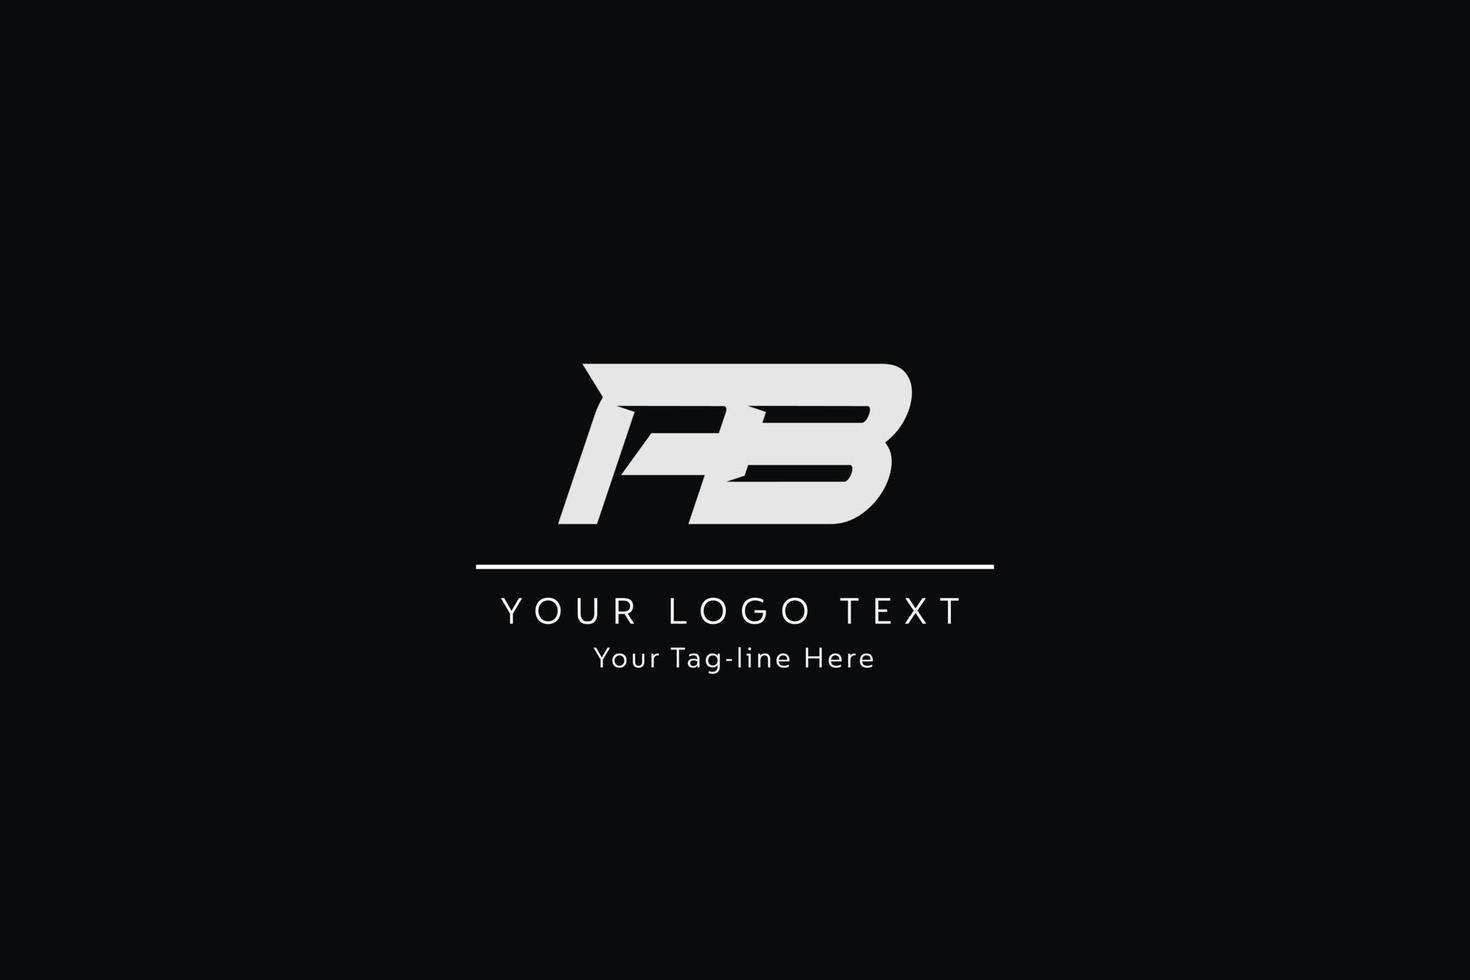 création de logo de lettre ab. illustration vectorielle d'icône de lettres ab modernes créatives. vecteur